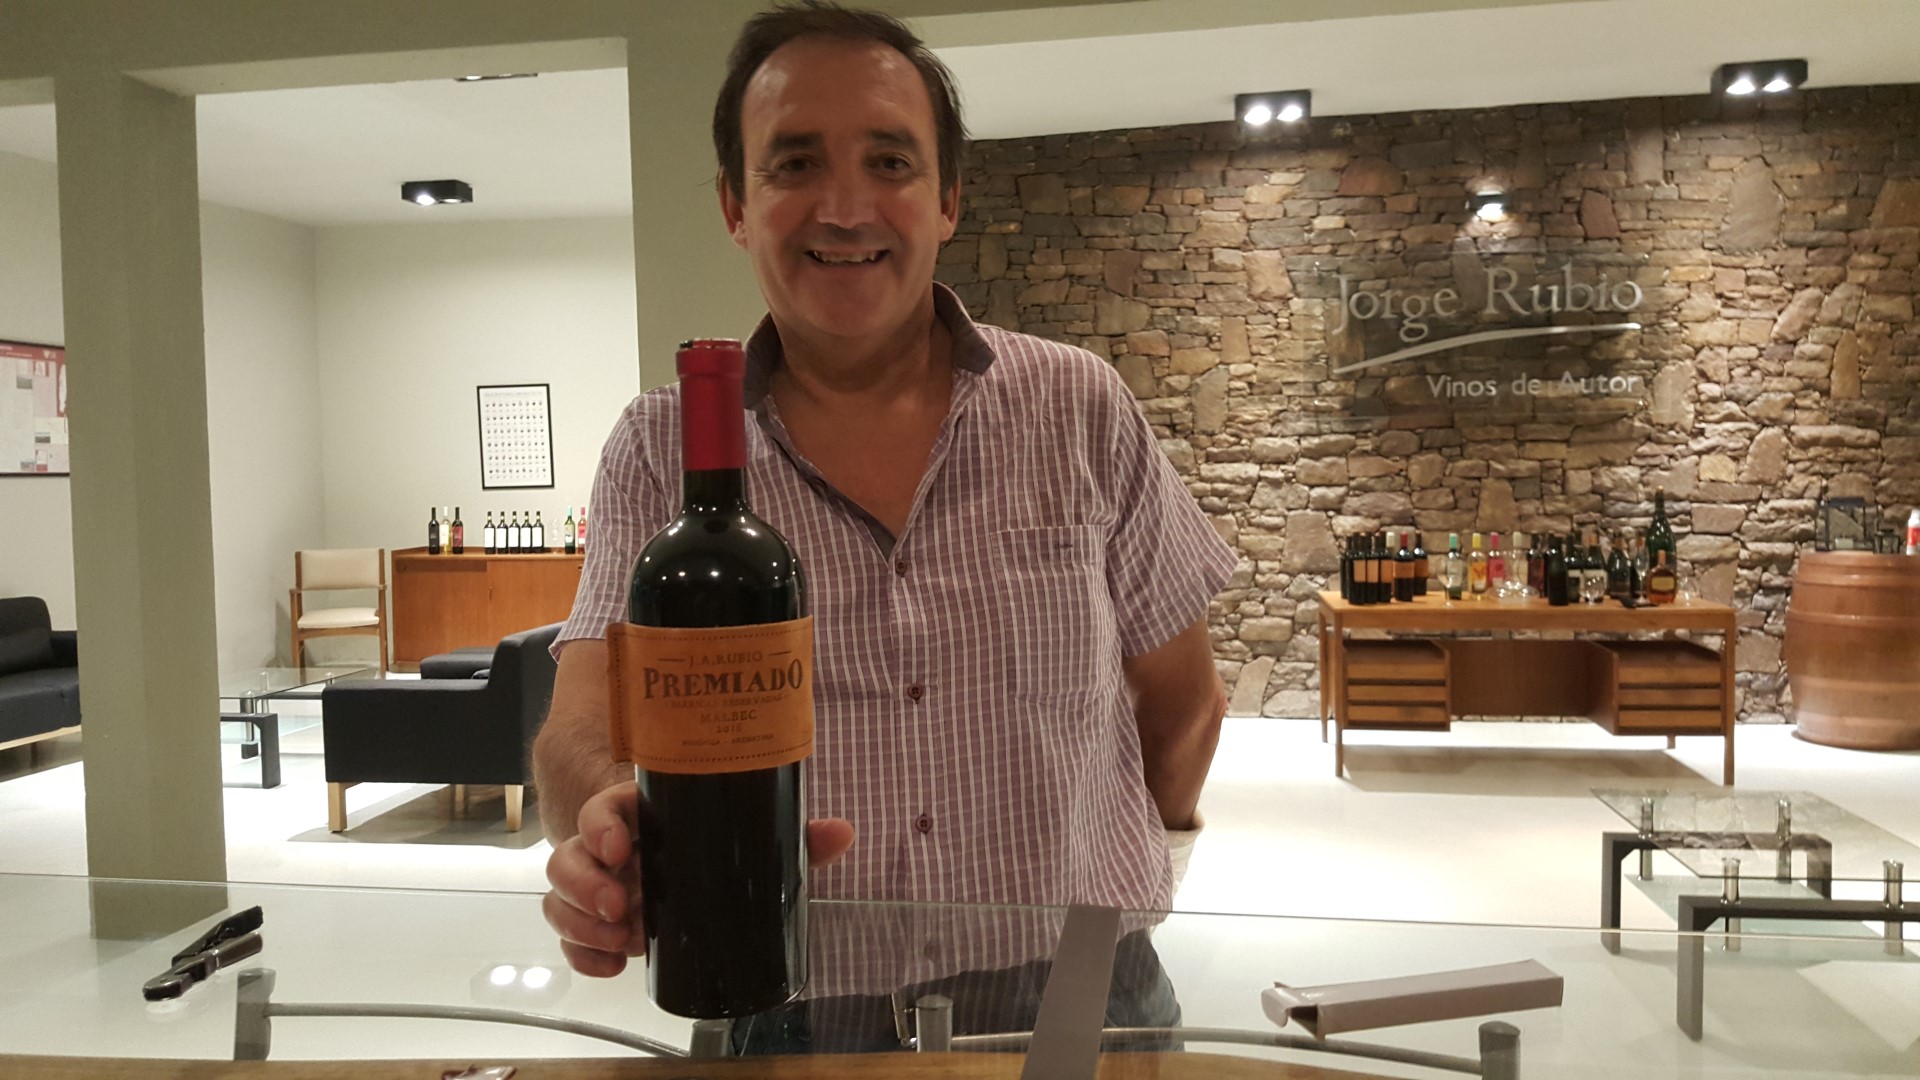 Jorge Rubio, el enólogo alvearense que revolucionó con sus etiquetas de cuero, celebra 20 años de sus vinos únicos